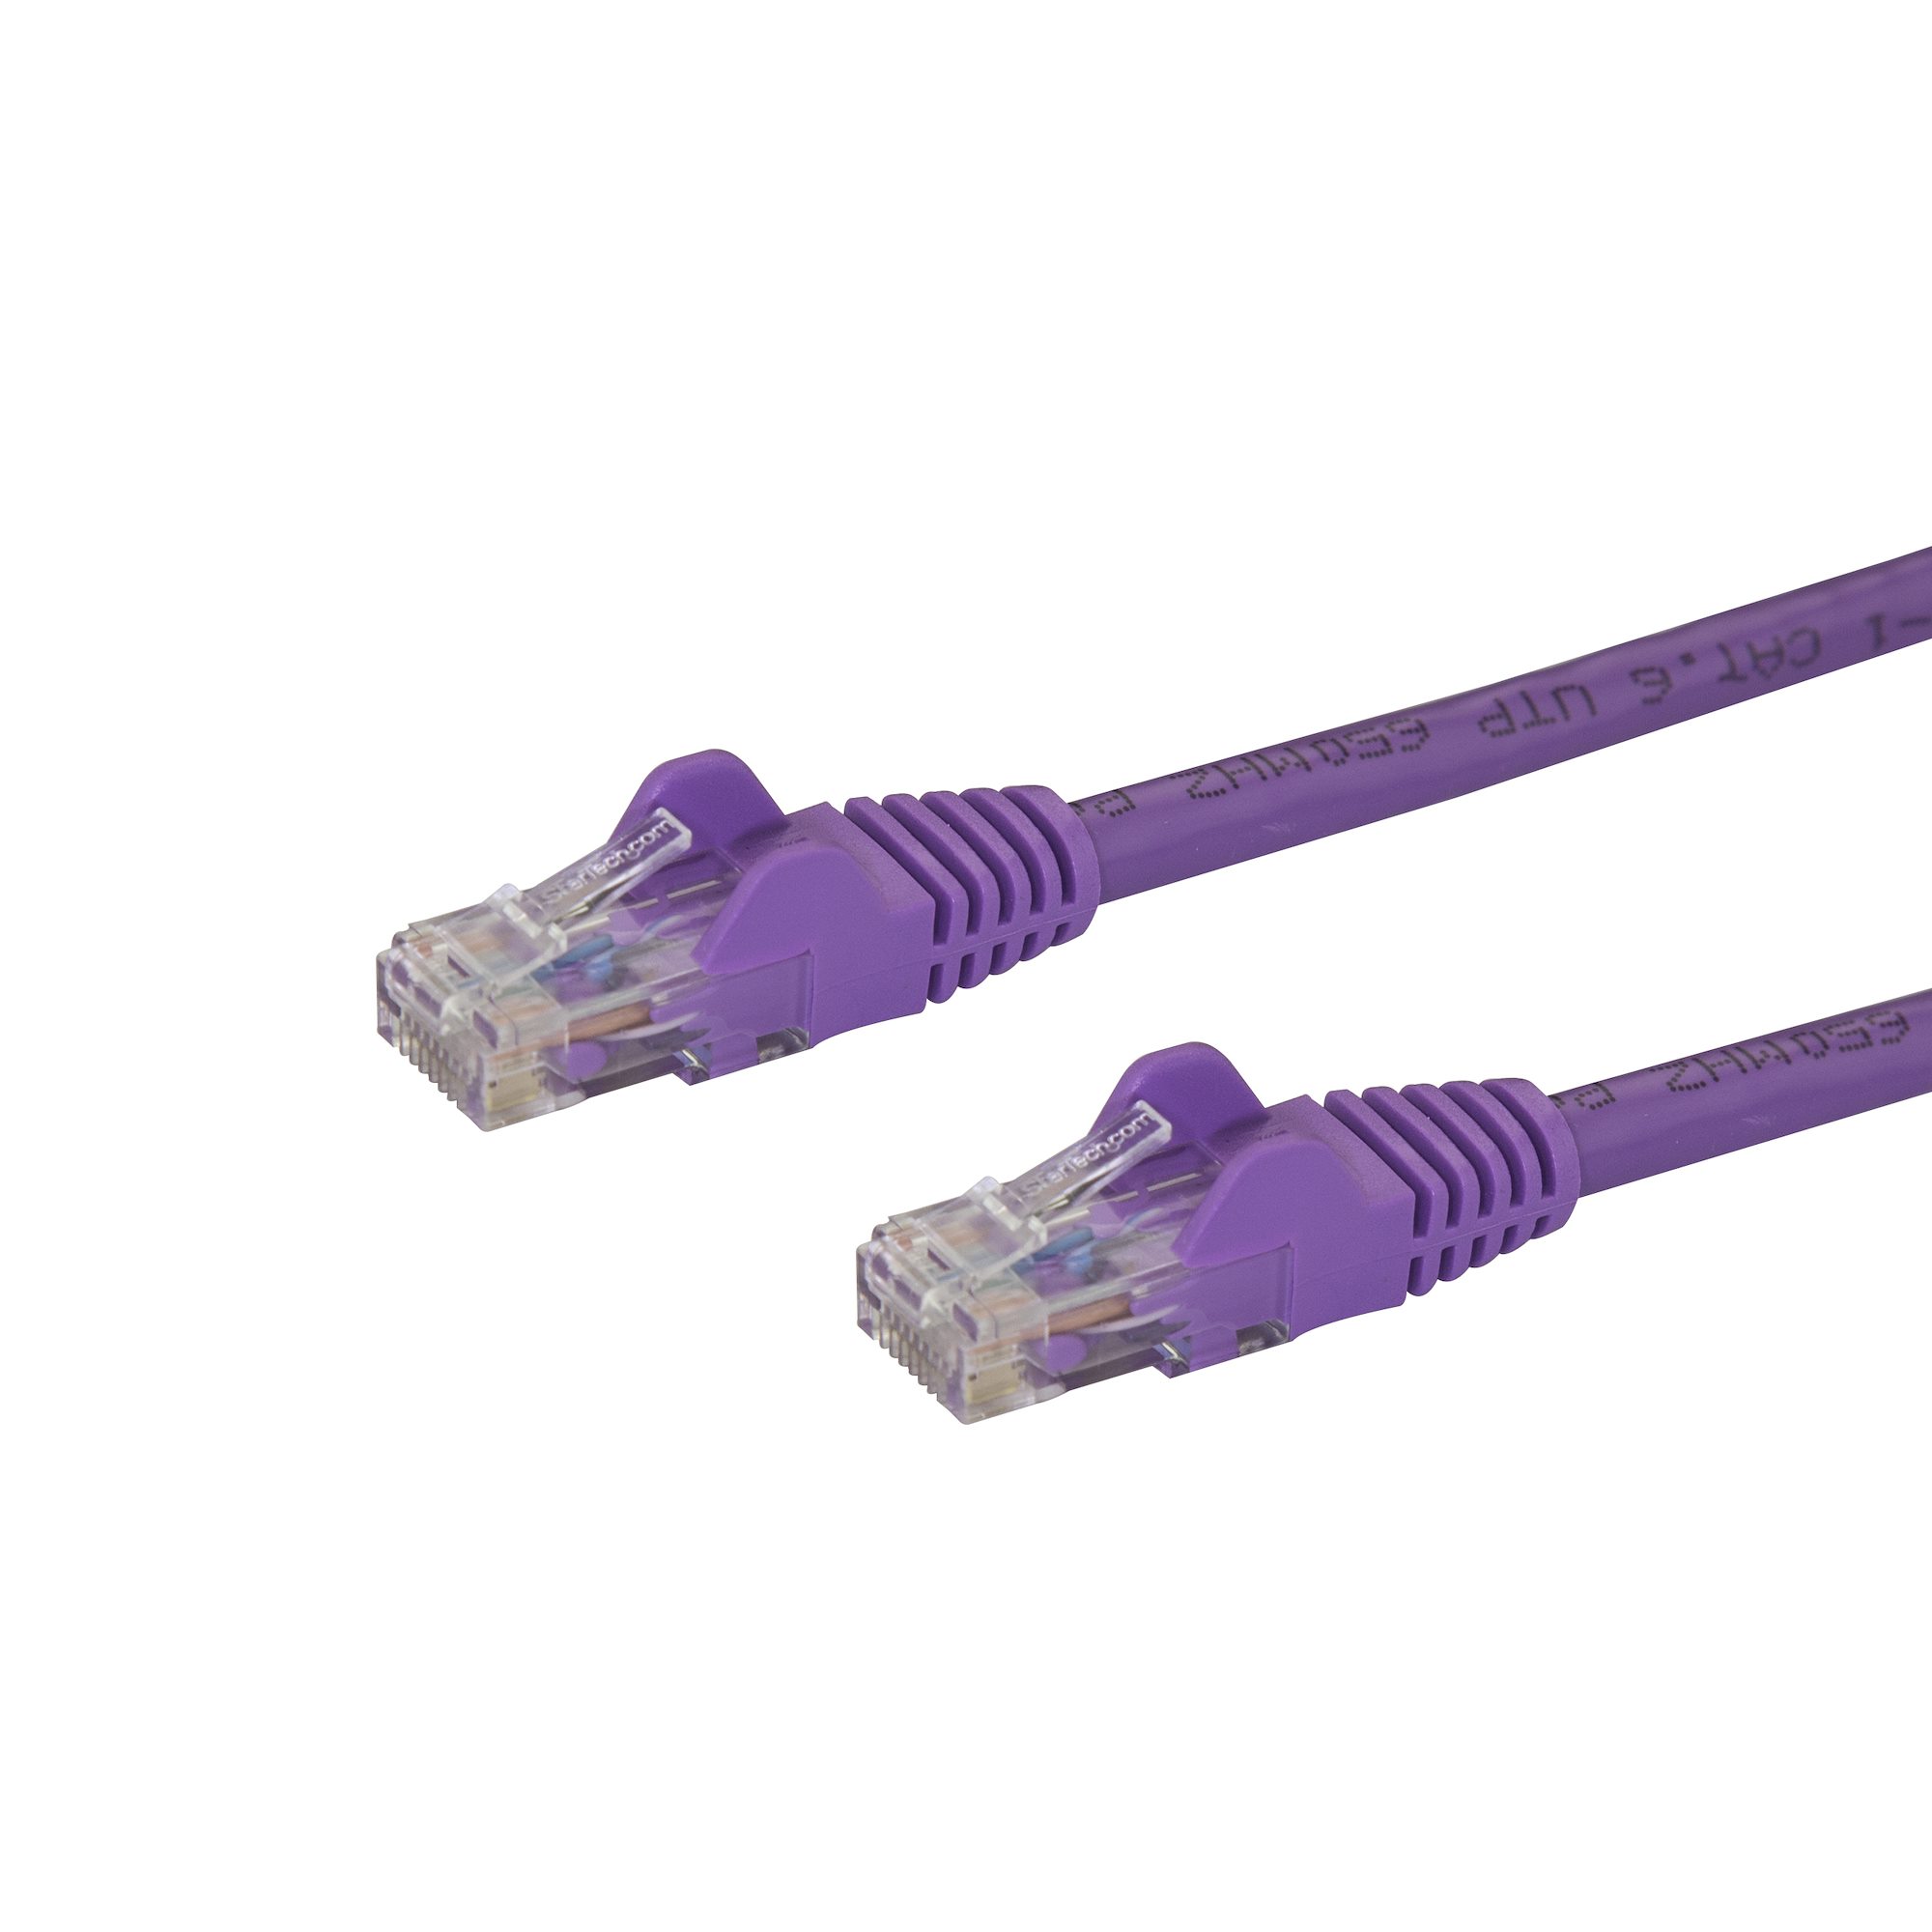 Pat 10. Разъем rj45 для Fluke. Ethernet кабель. Сетевой кабель ETL Tia/. Итальянский сетевой кабель.